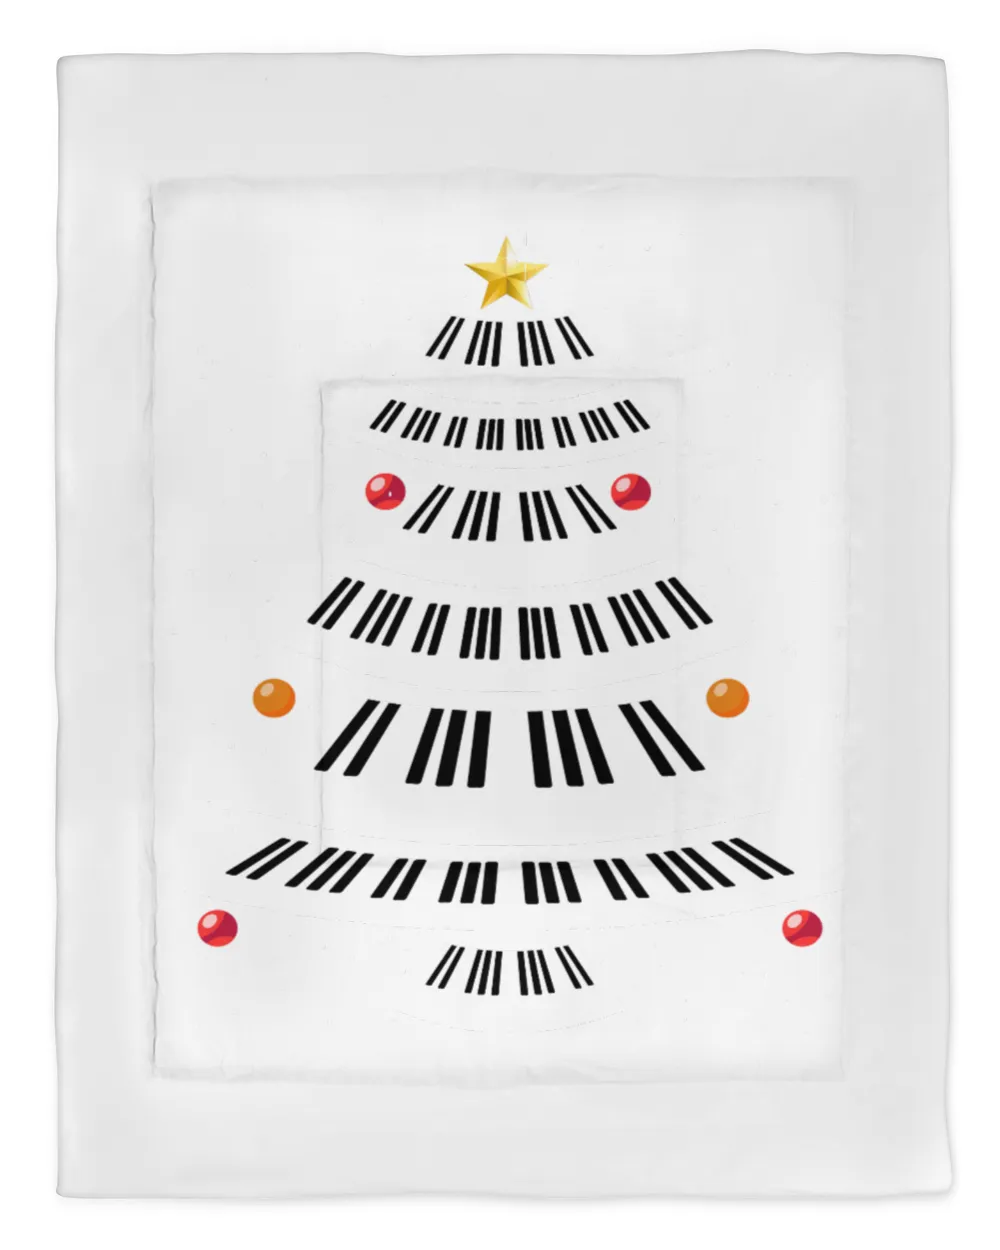 PIANO CHRISTMAS TREE